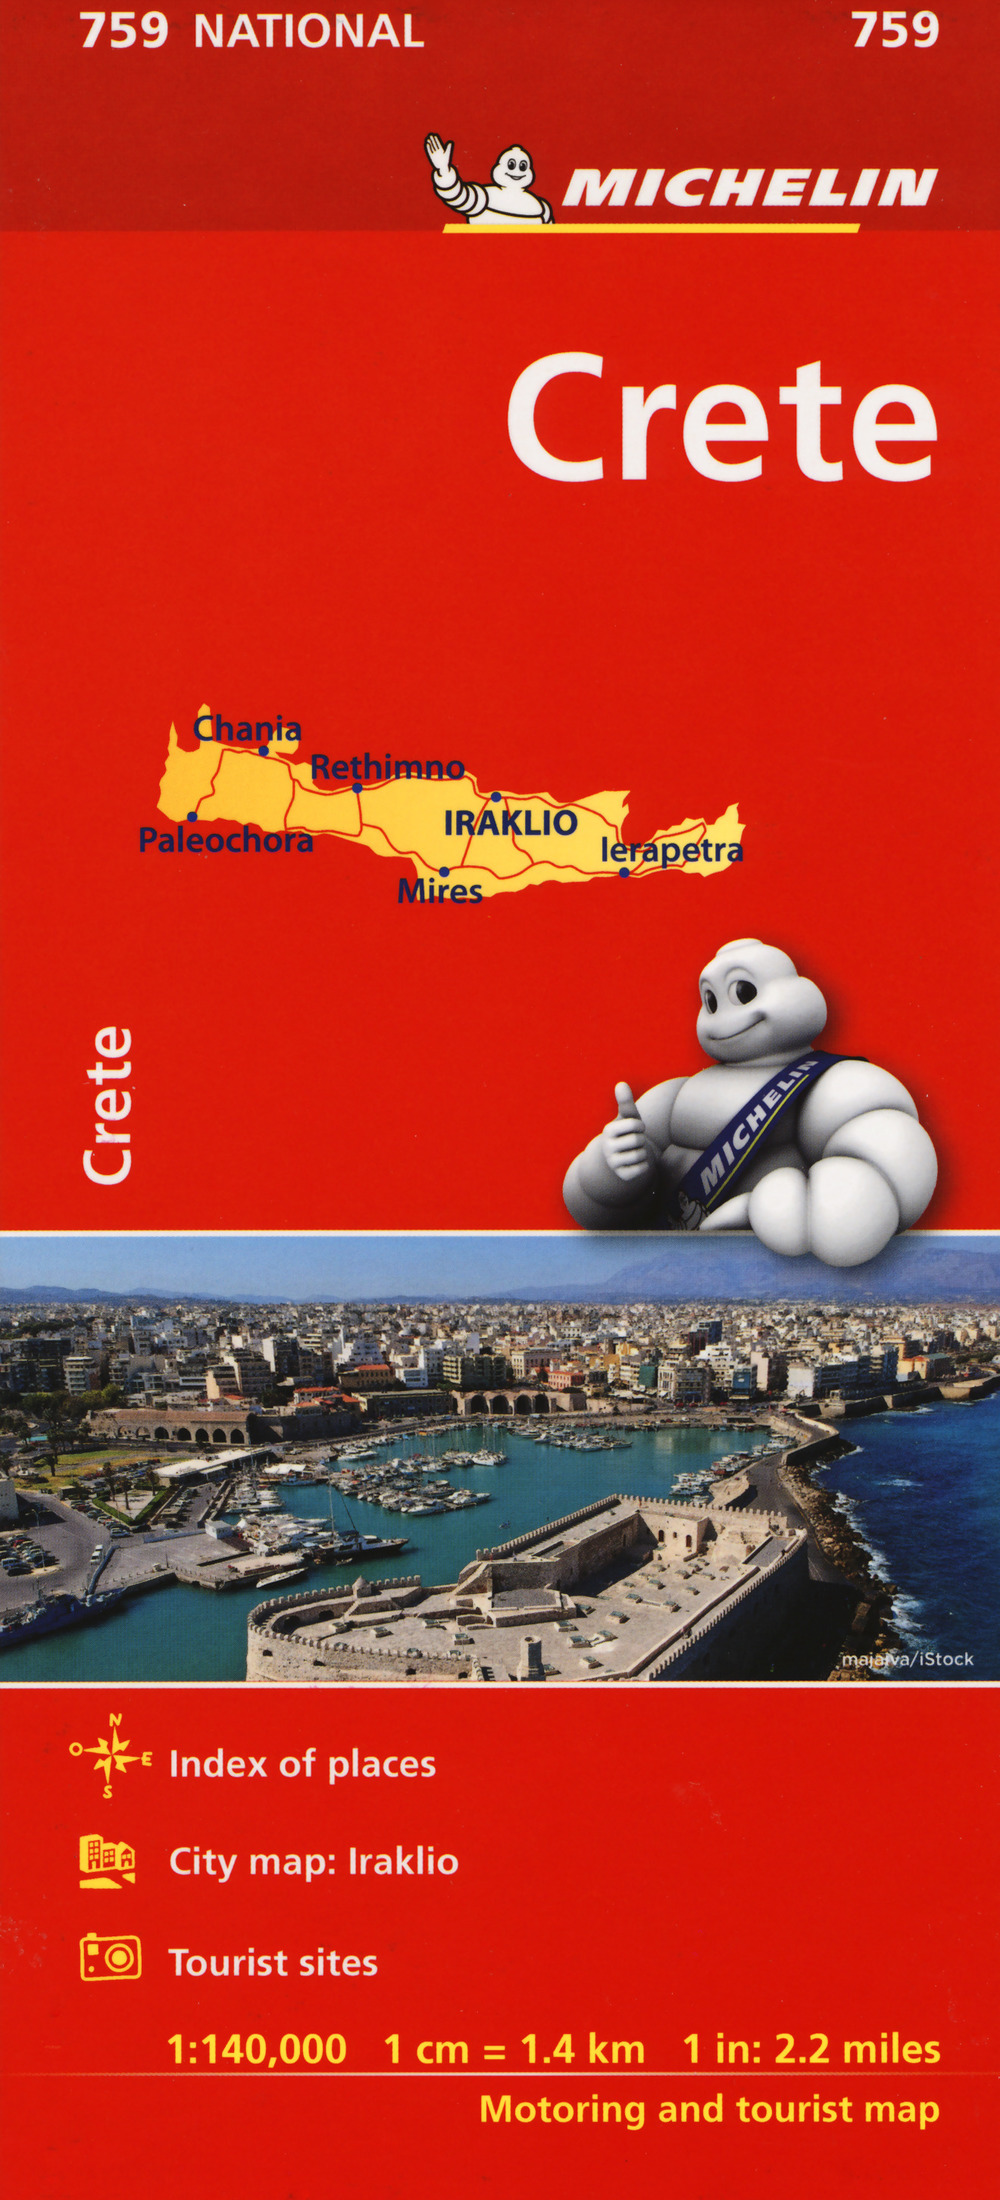 Creta 1:140.000